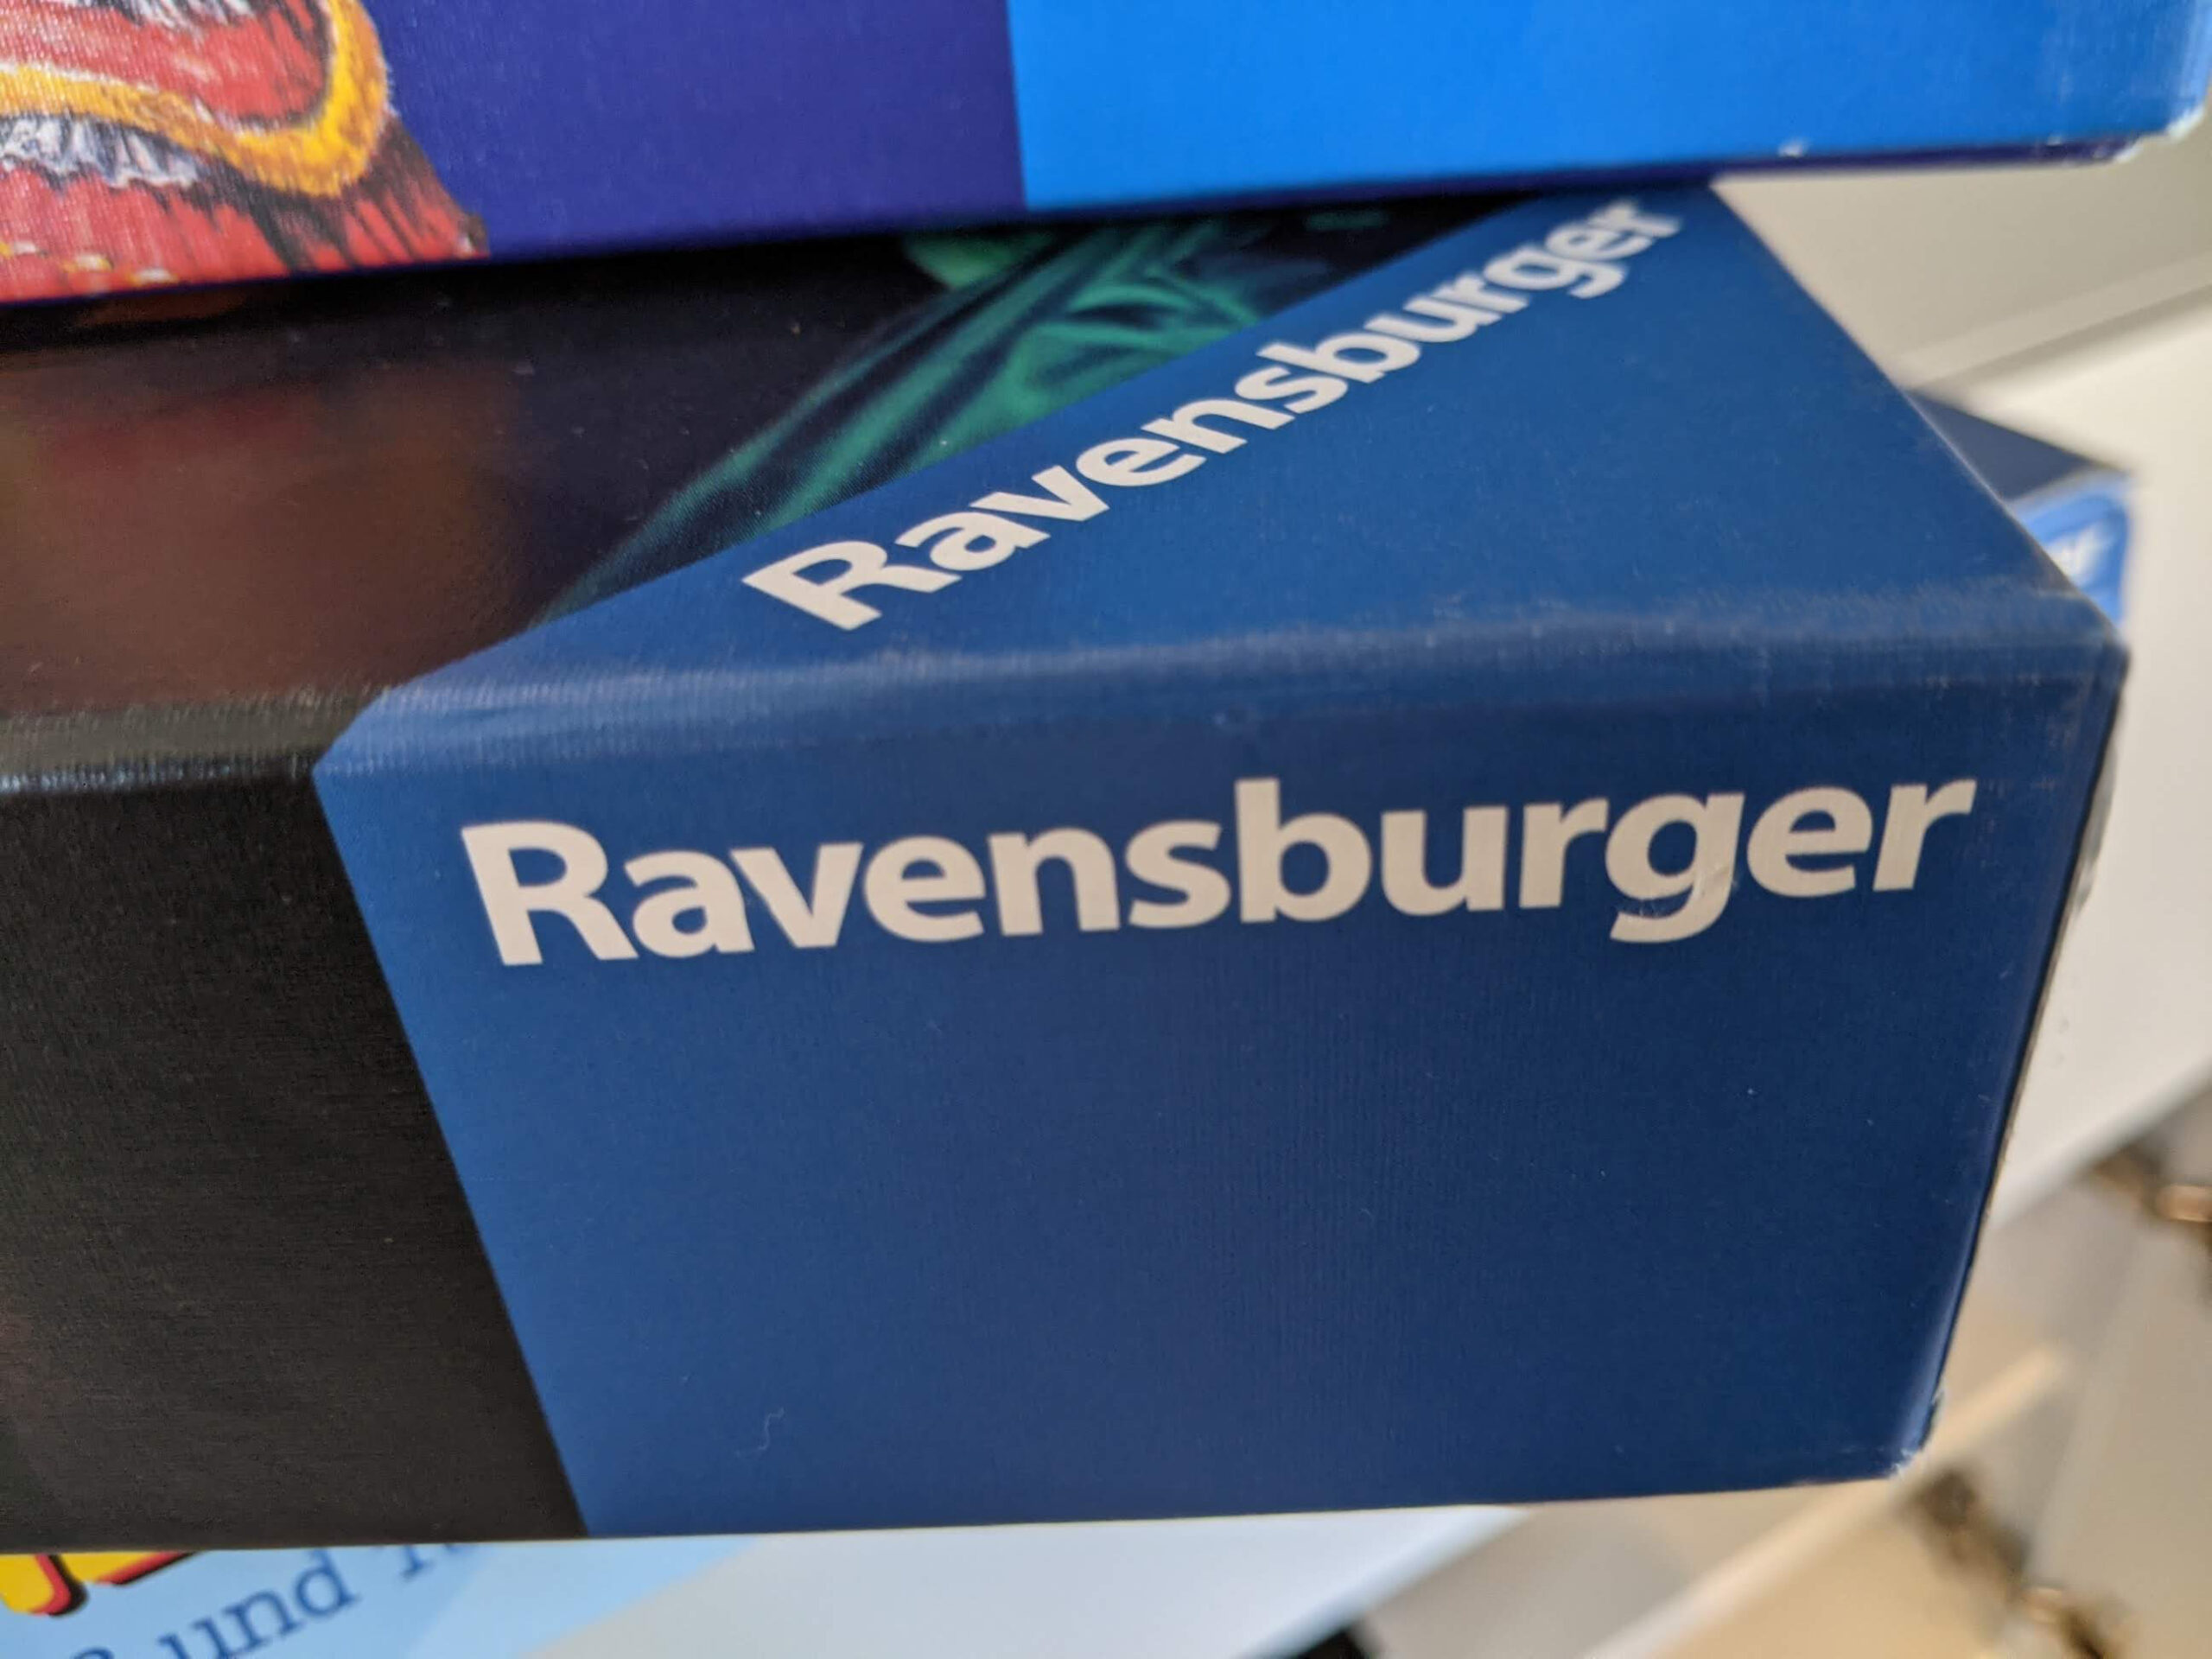 Ravensburger: Bahn eCoupon für 15 Euro gratis - 2Mitbringspiele kaufen